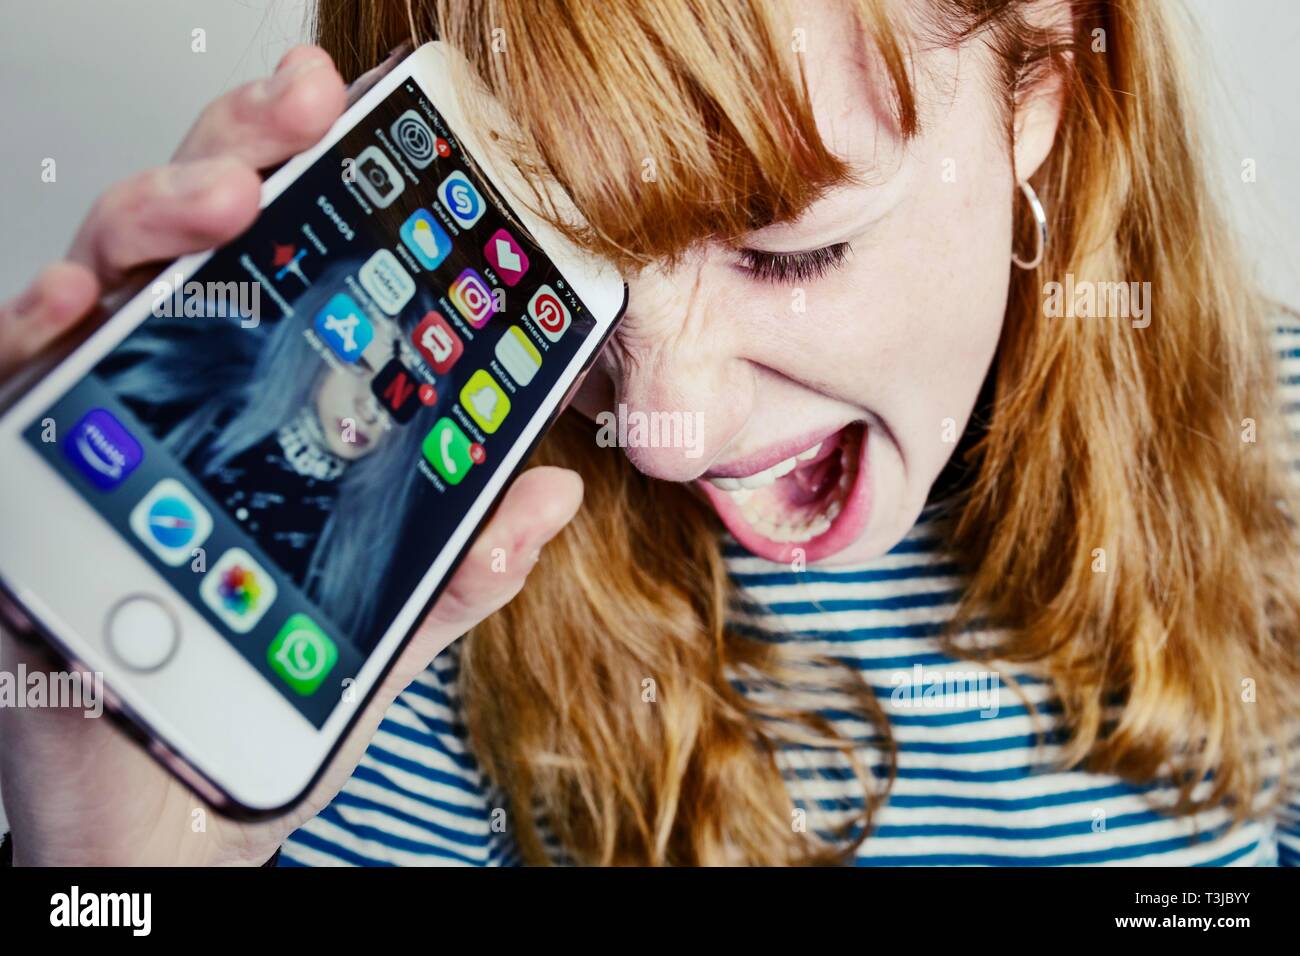 Ragazza adolescente, i capelli rossi, tenendo la testa nella disperazione urlando smartphone, studio shot, Germania Foto Stock